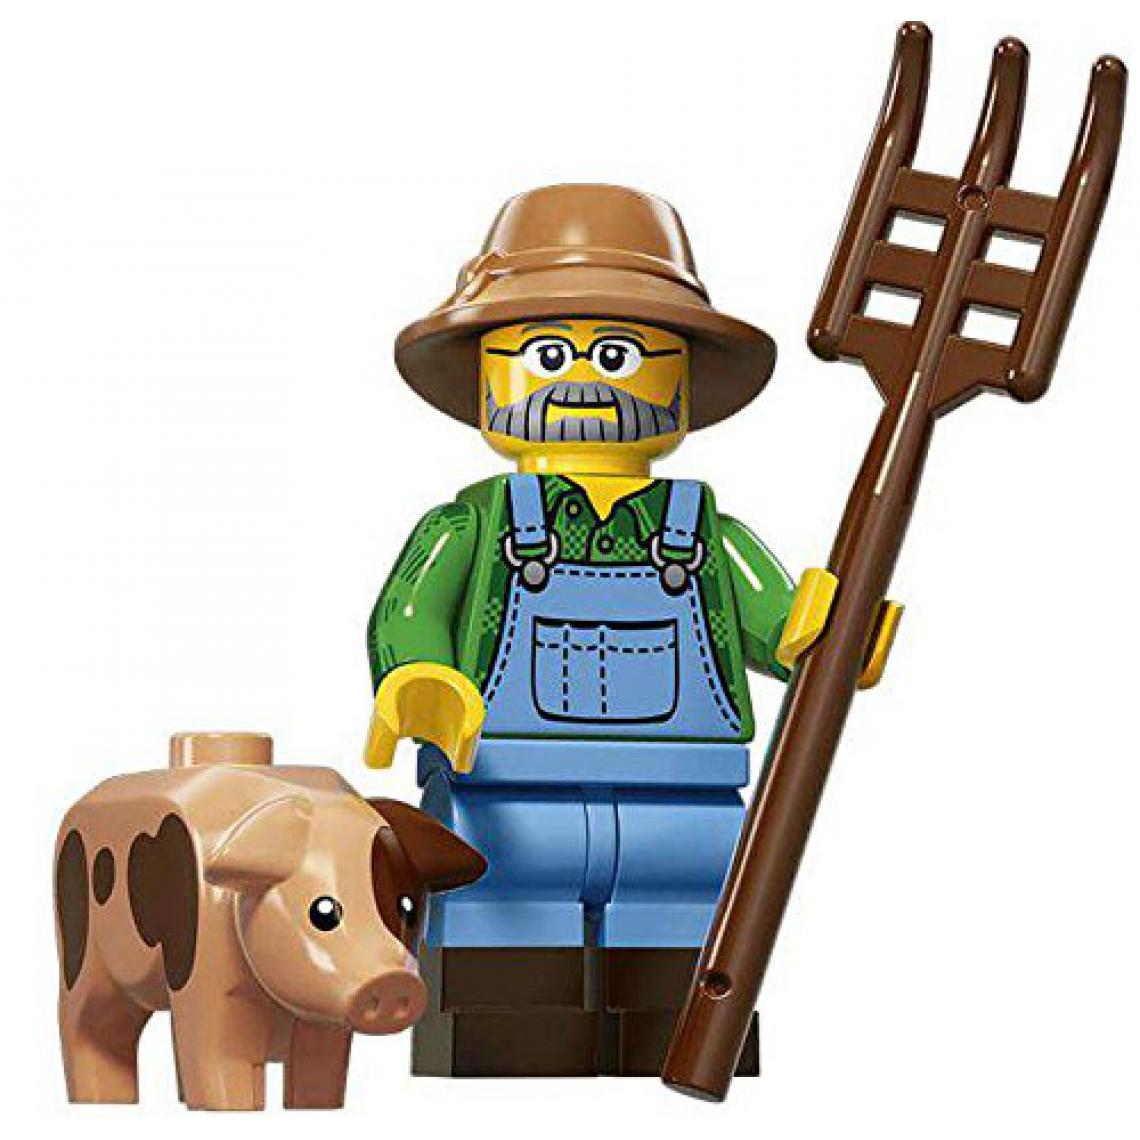 Lego - Figurine à collectionner LEgO Series 15 71011 - Fermier - Briques et blocs